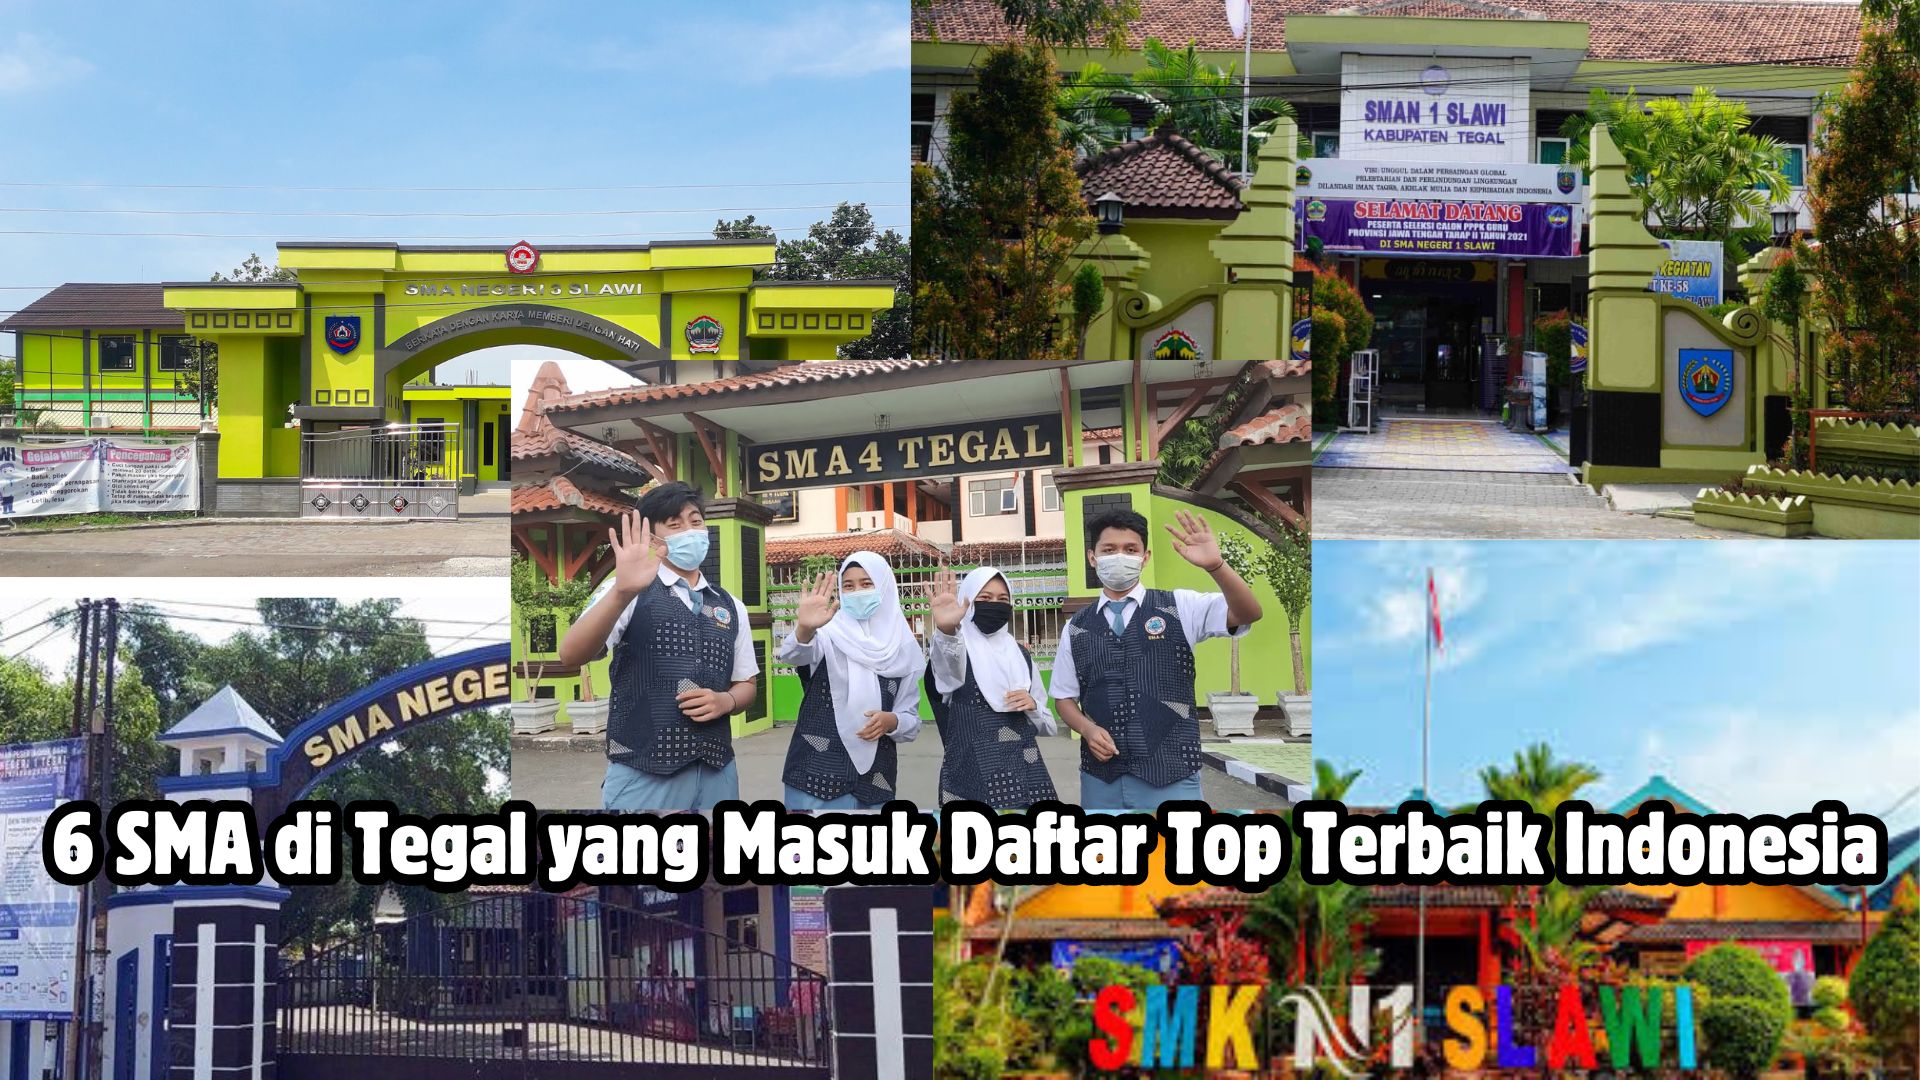 Inilah Daftar 6 SMA di Tegal yang Masuk Deretan Top Sekolah Terbaik di Indonesia Karena Tinggi Nilai UTBK-nya 